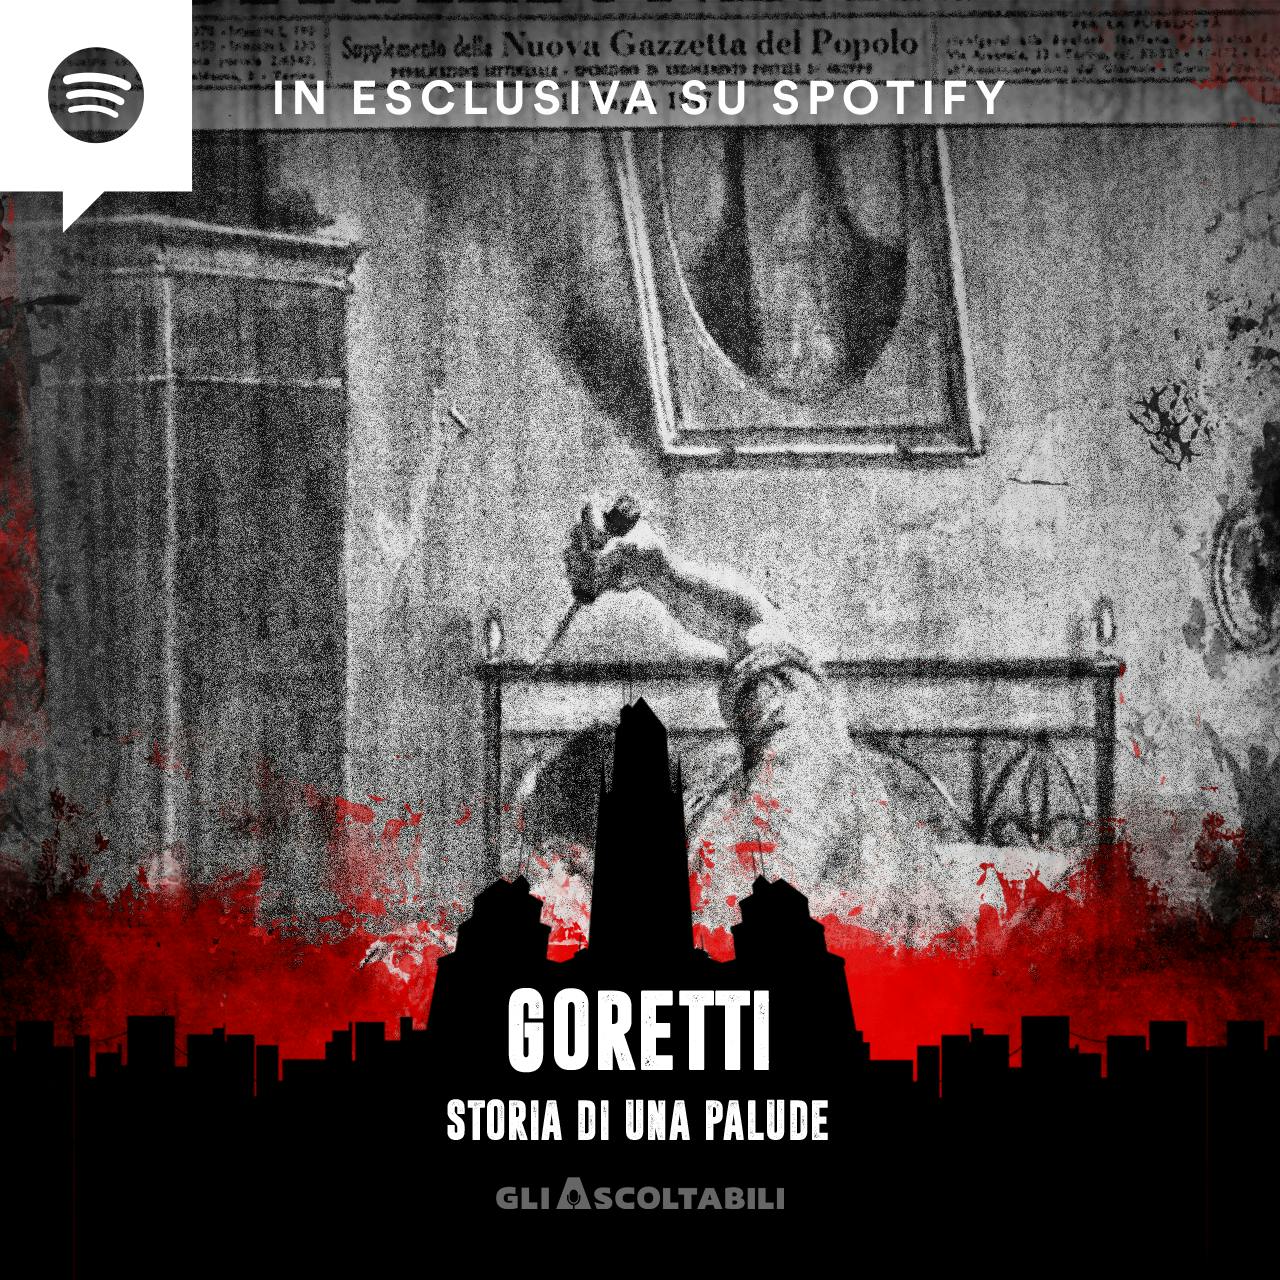 Goretti - Storia di una palude